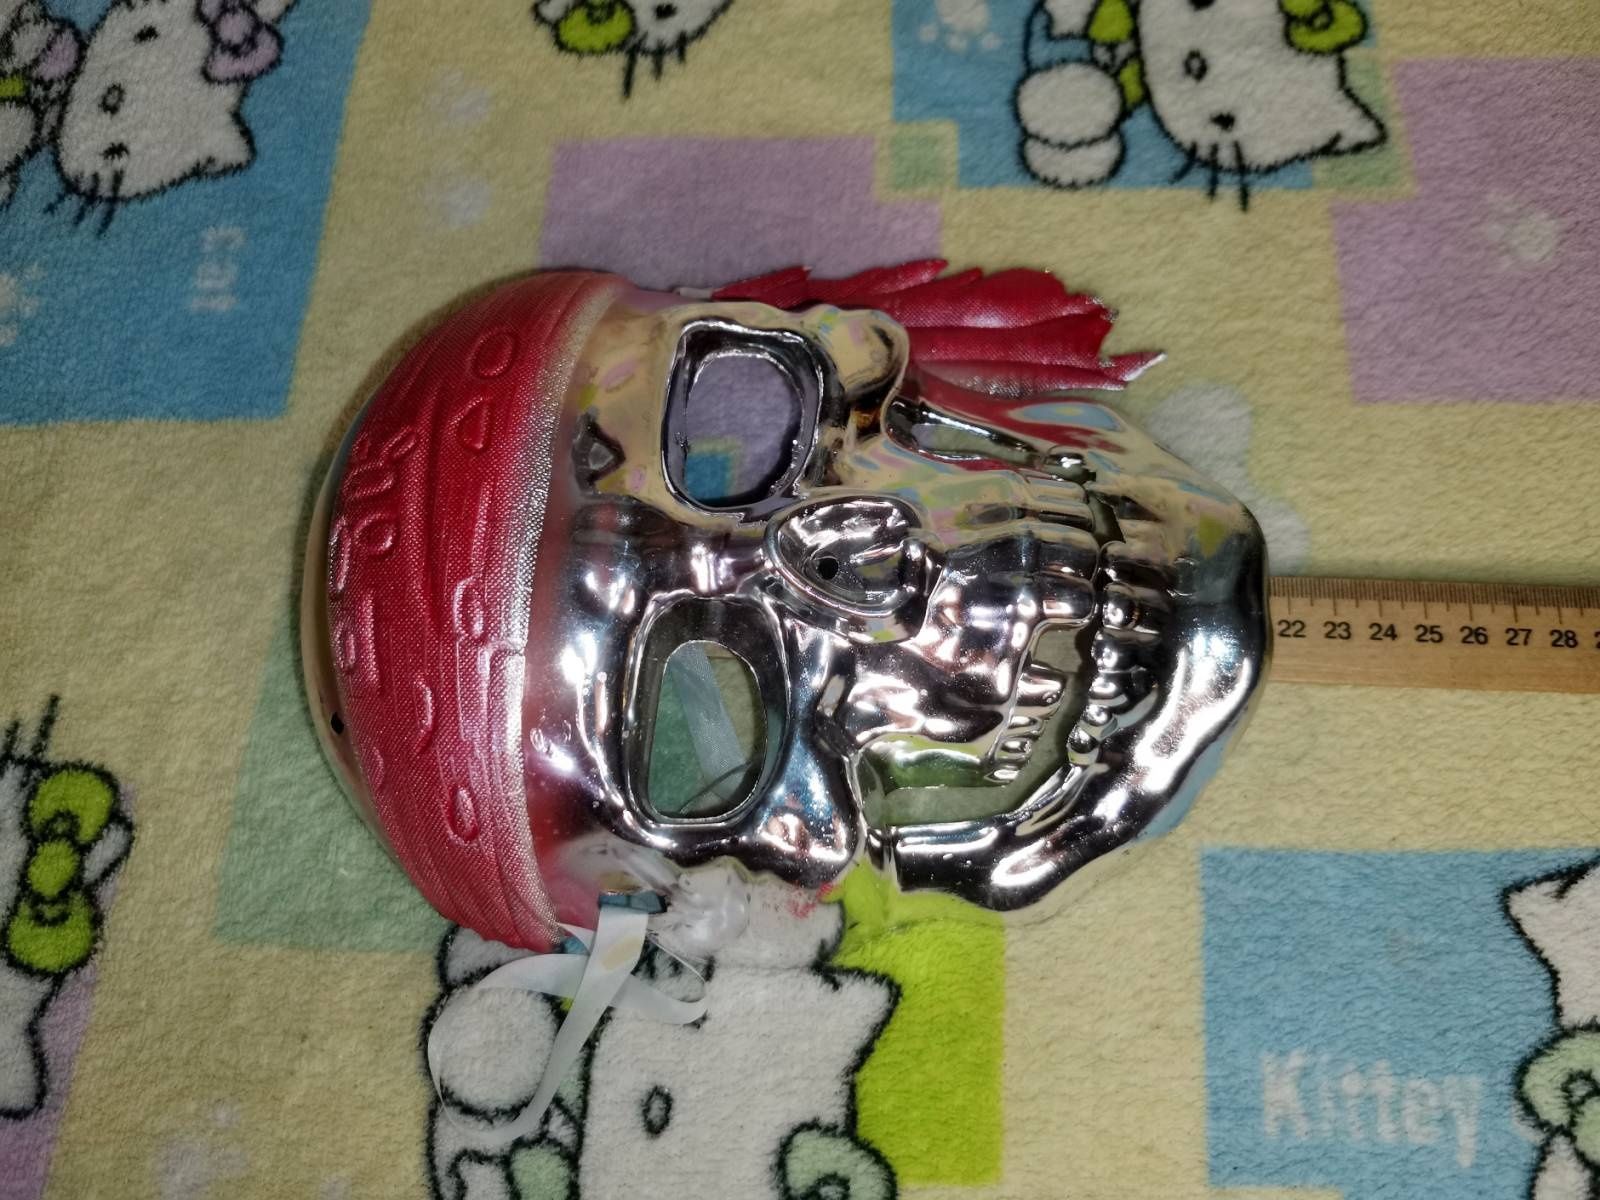 Маска пластиковая Пиратский череп в Серебряном цвете хэллоуин праздник